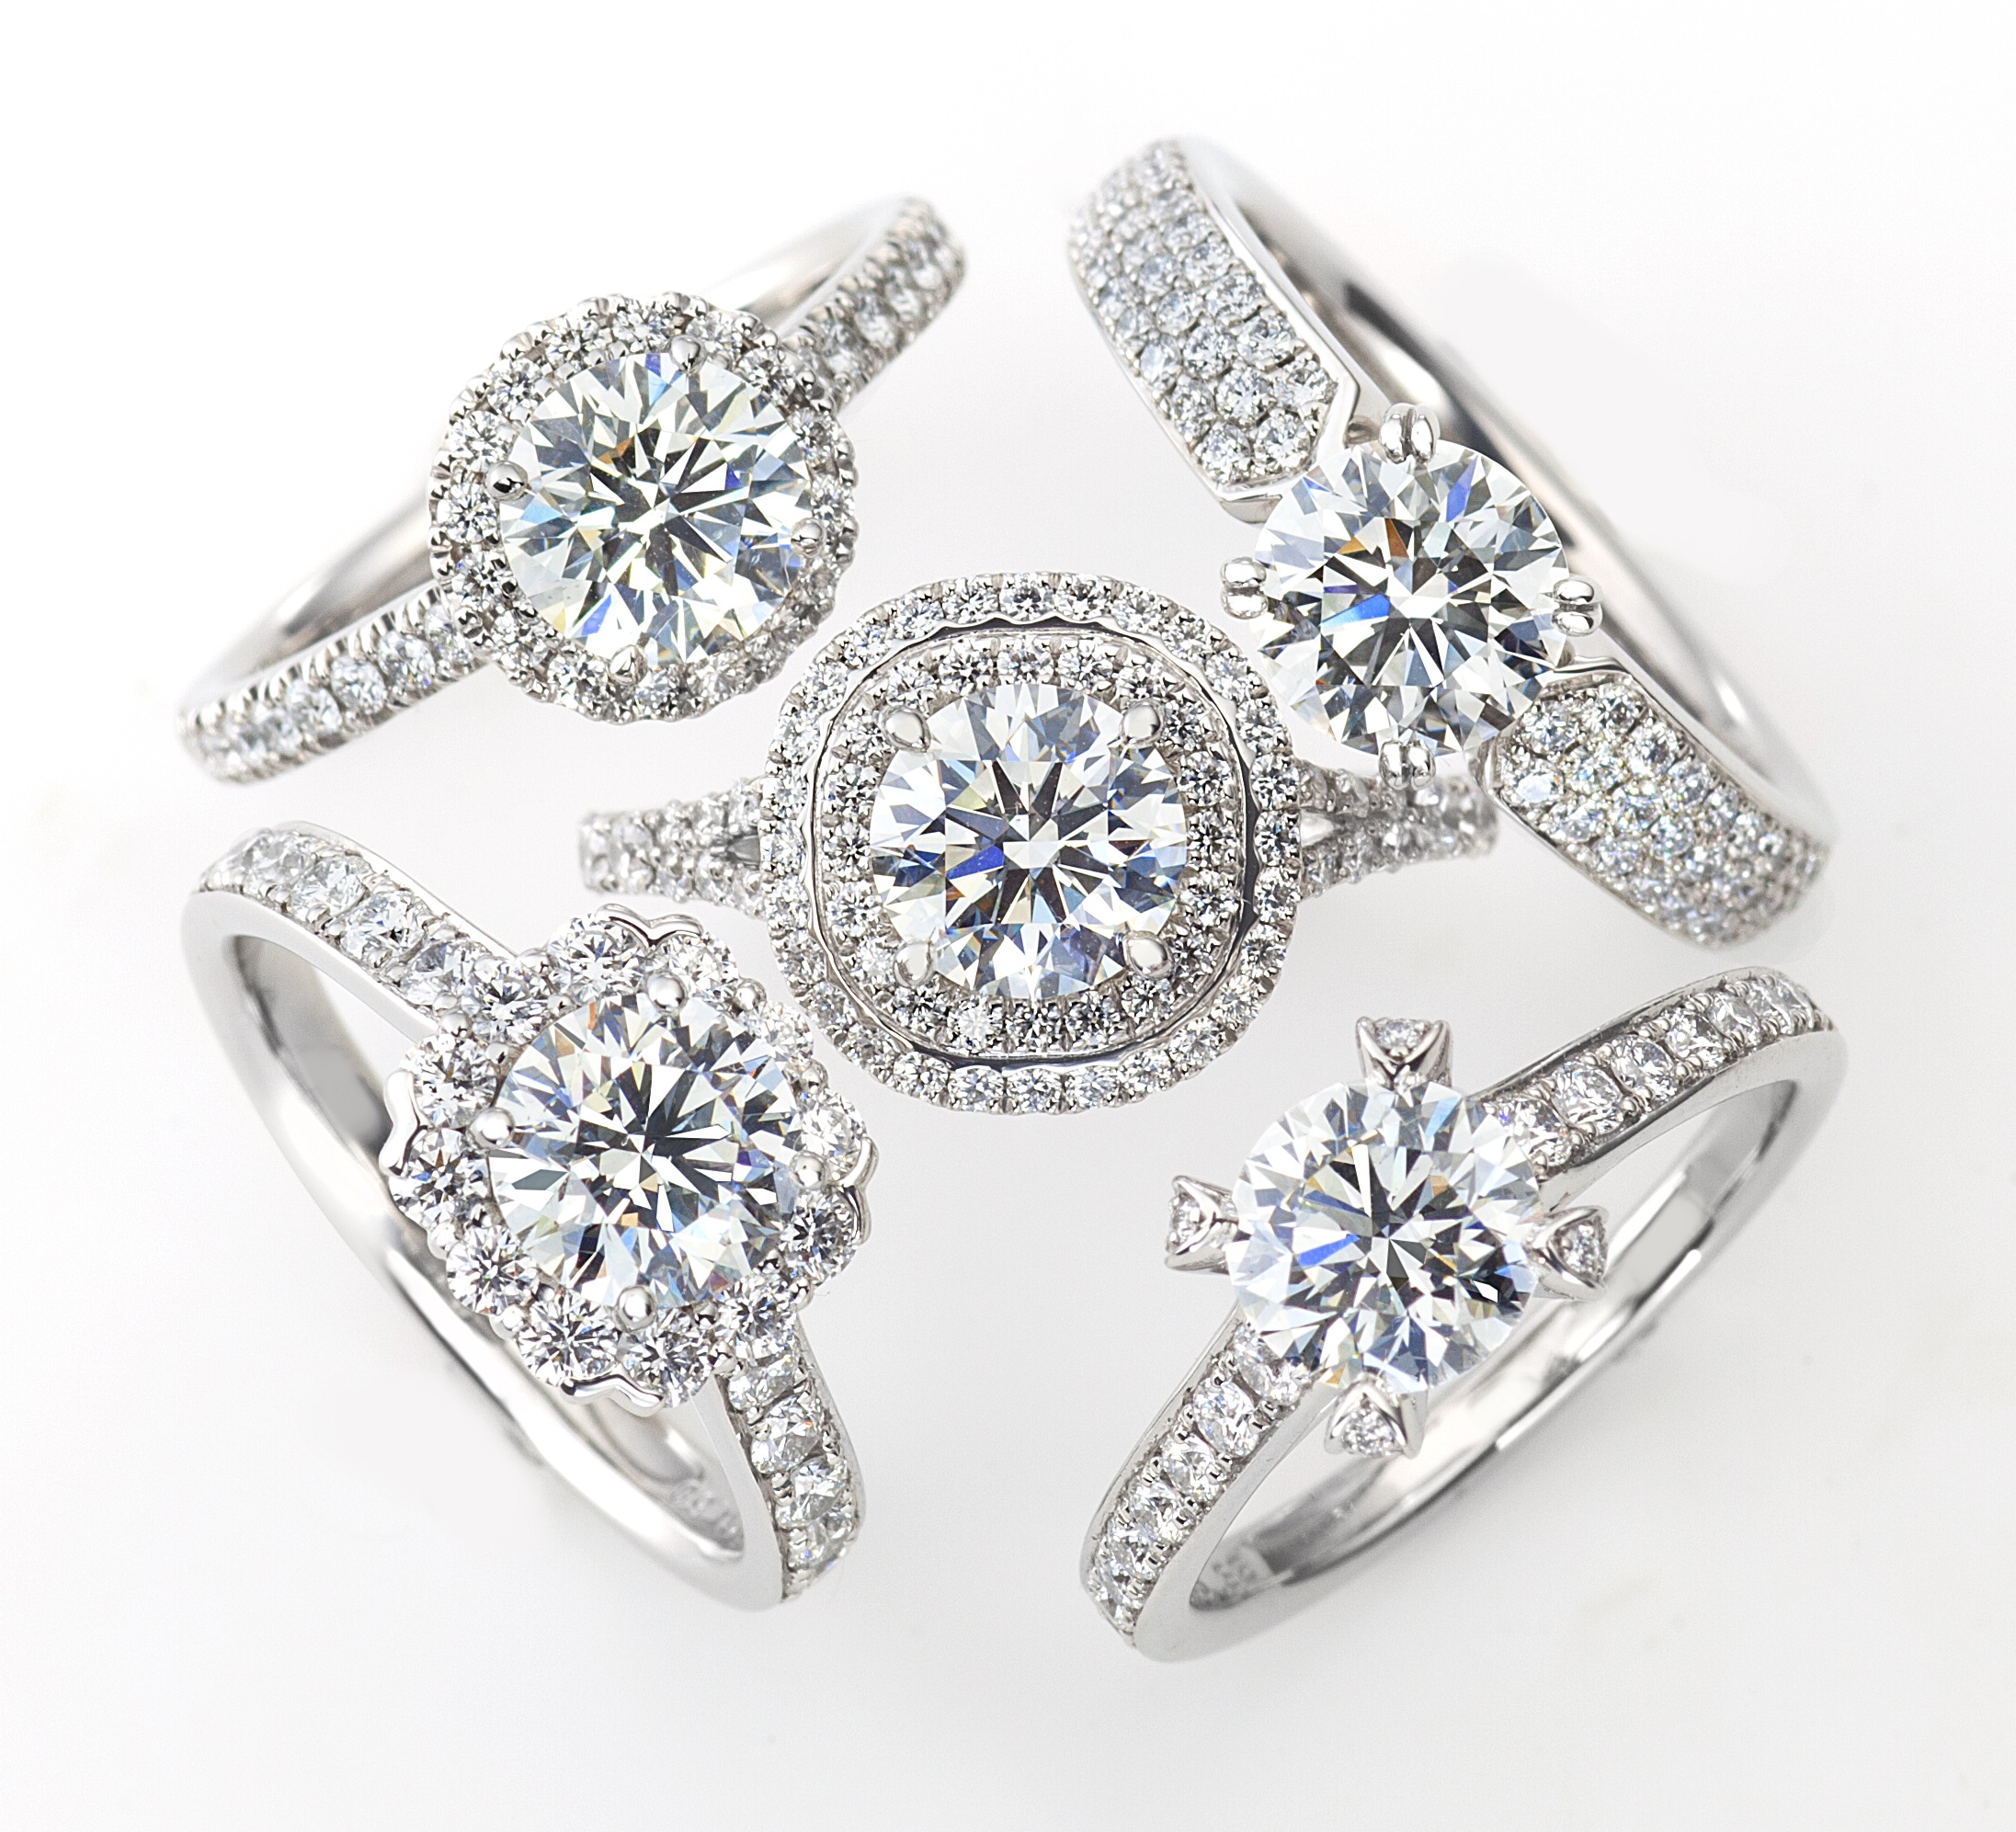 世界三大ダイヤモンドブランドのリング5本が並んだ画像